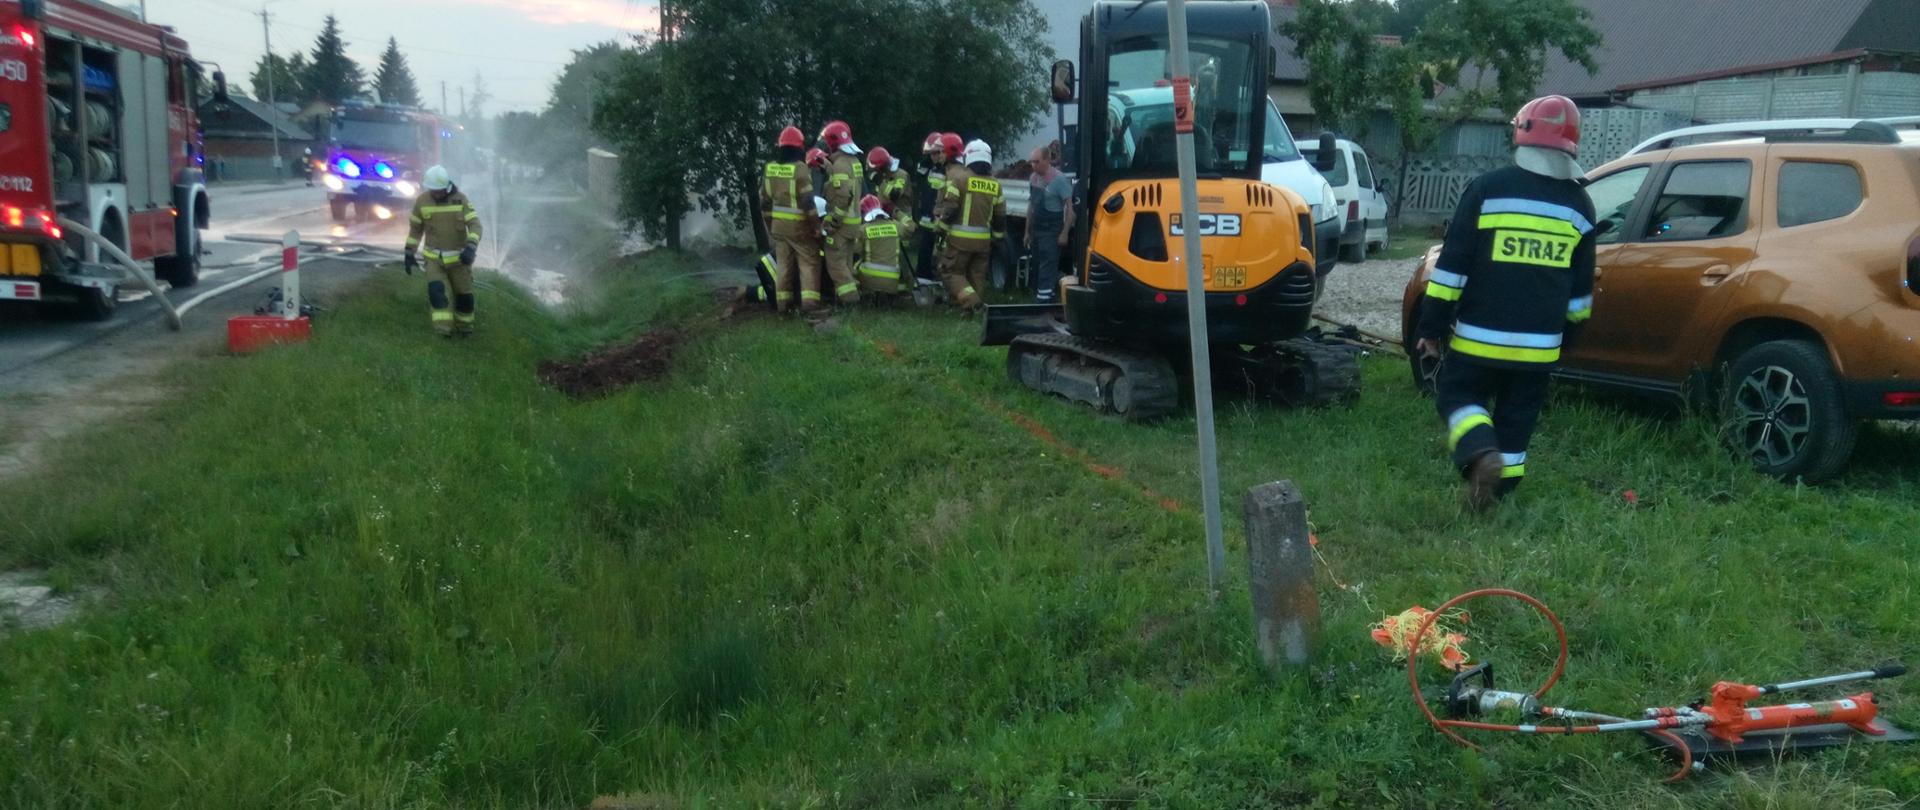 Na zdjęciu widać drogę na której stoją samochody strażackie. Na terenie przyległym do drogi stoi koparka oraz grupa strażaków pracująca przy uszczelnieniu rurociągu.